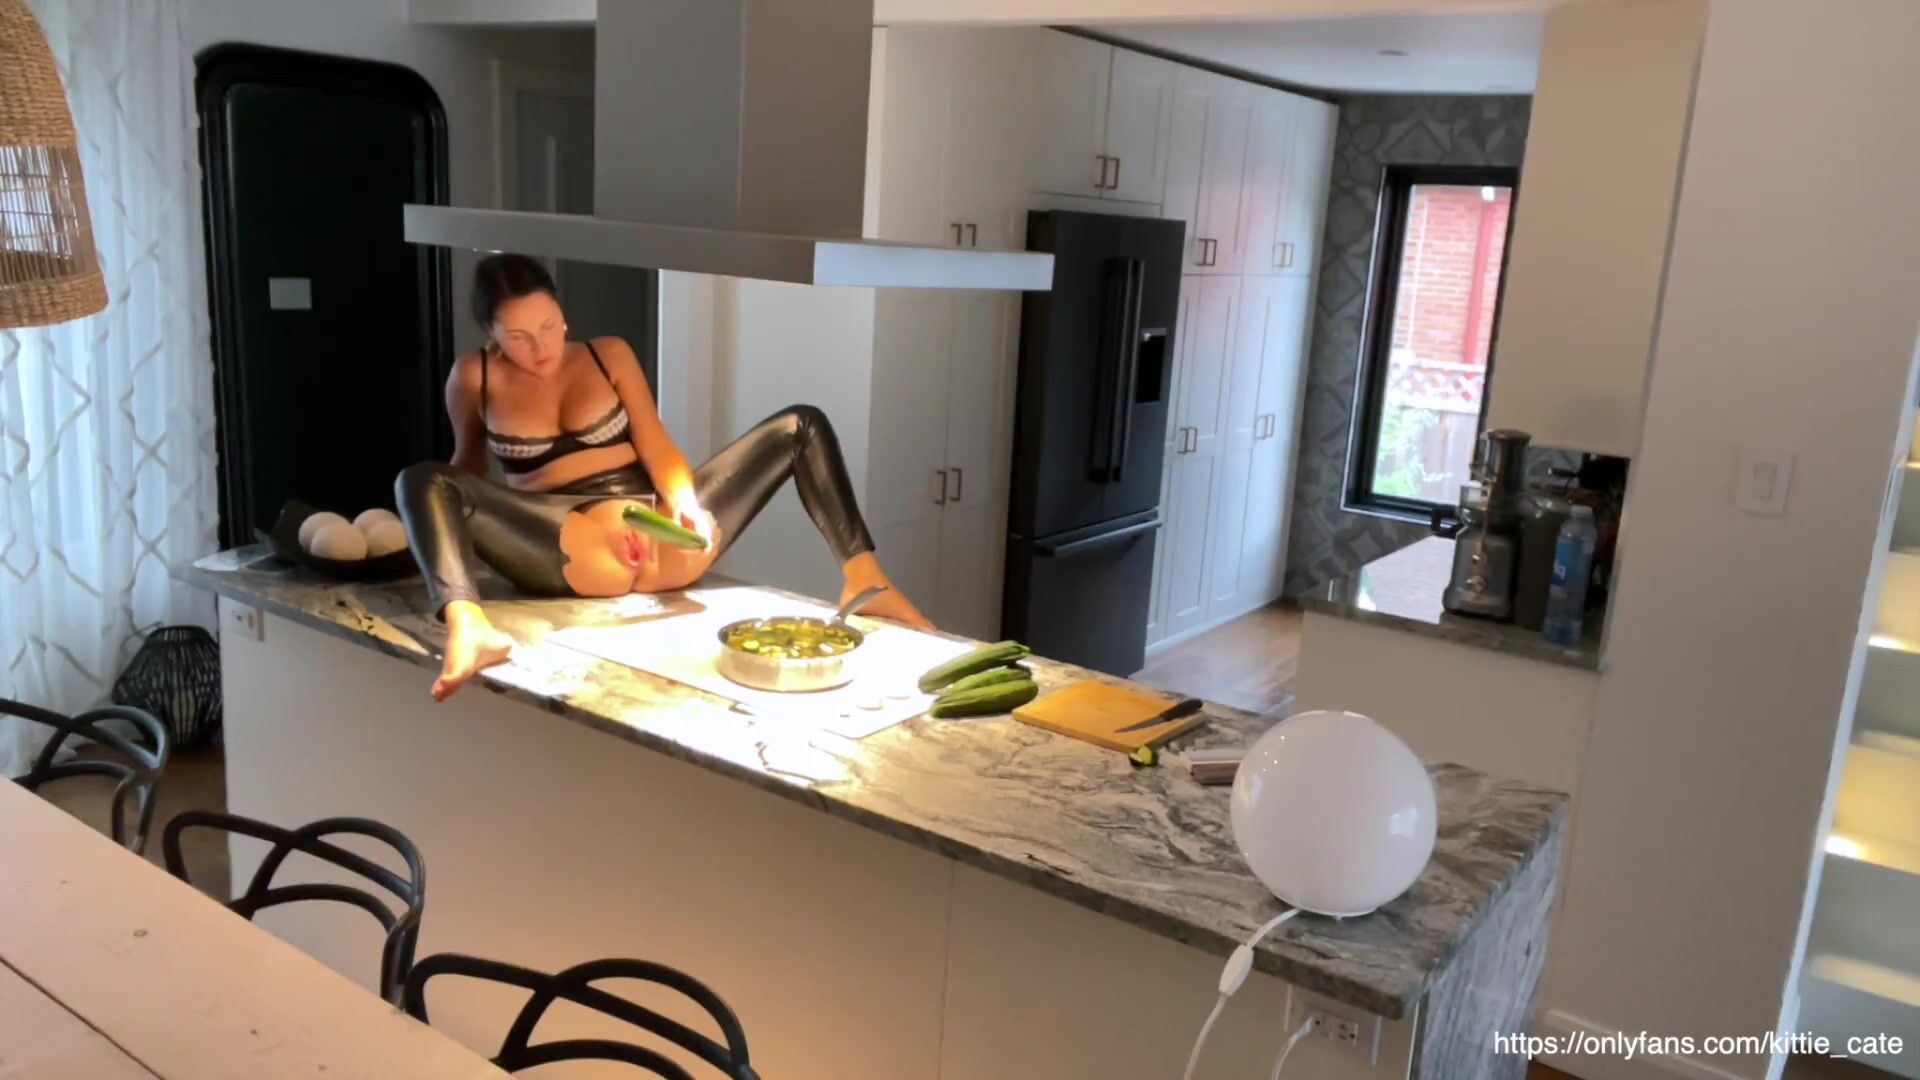 Домохозяйка заказывает секс массаж на дом - порно видео ролики на PORNO